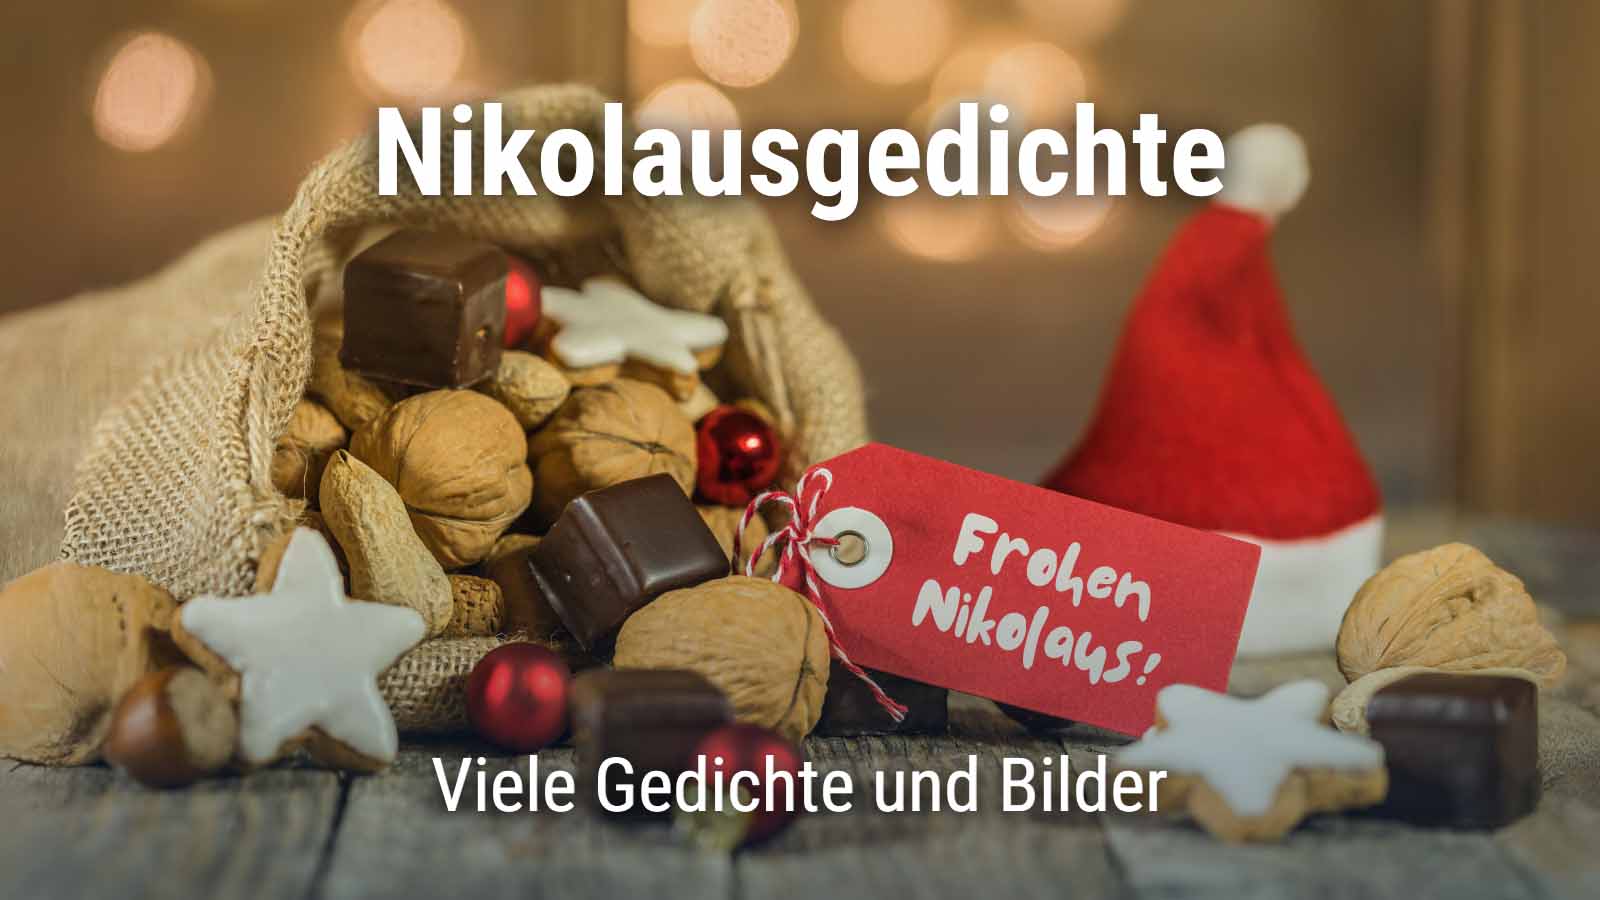 Nikolaussack mit Lebkuchen und Text "Nikolausgedichte. Viele Gedichte und Bilder"